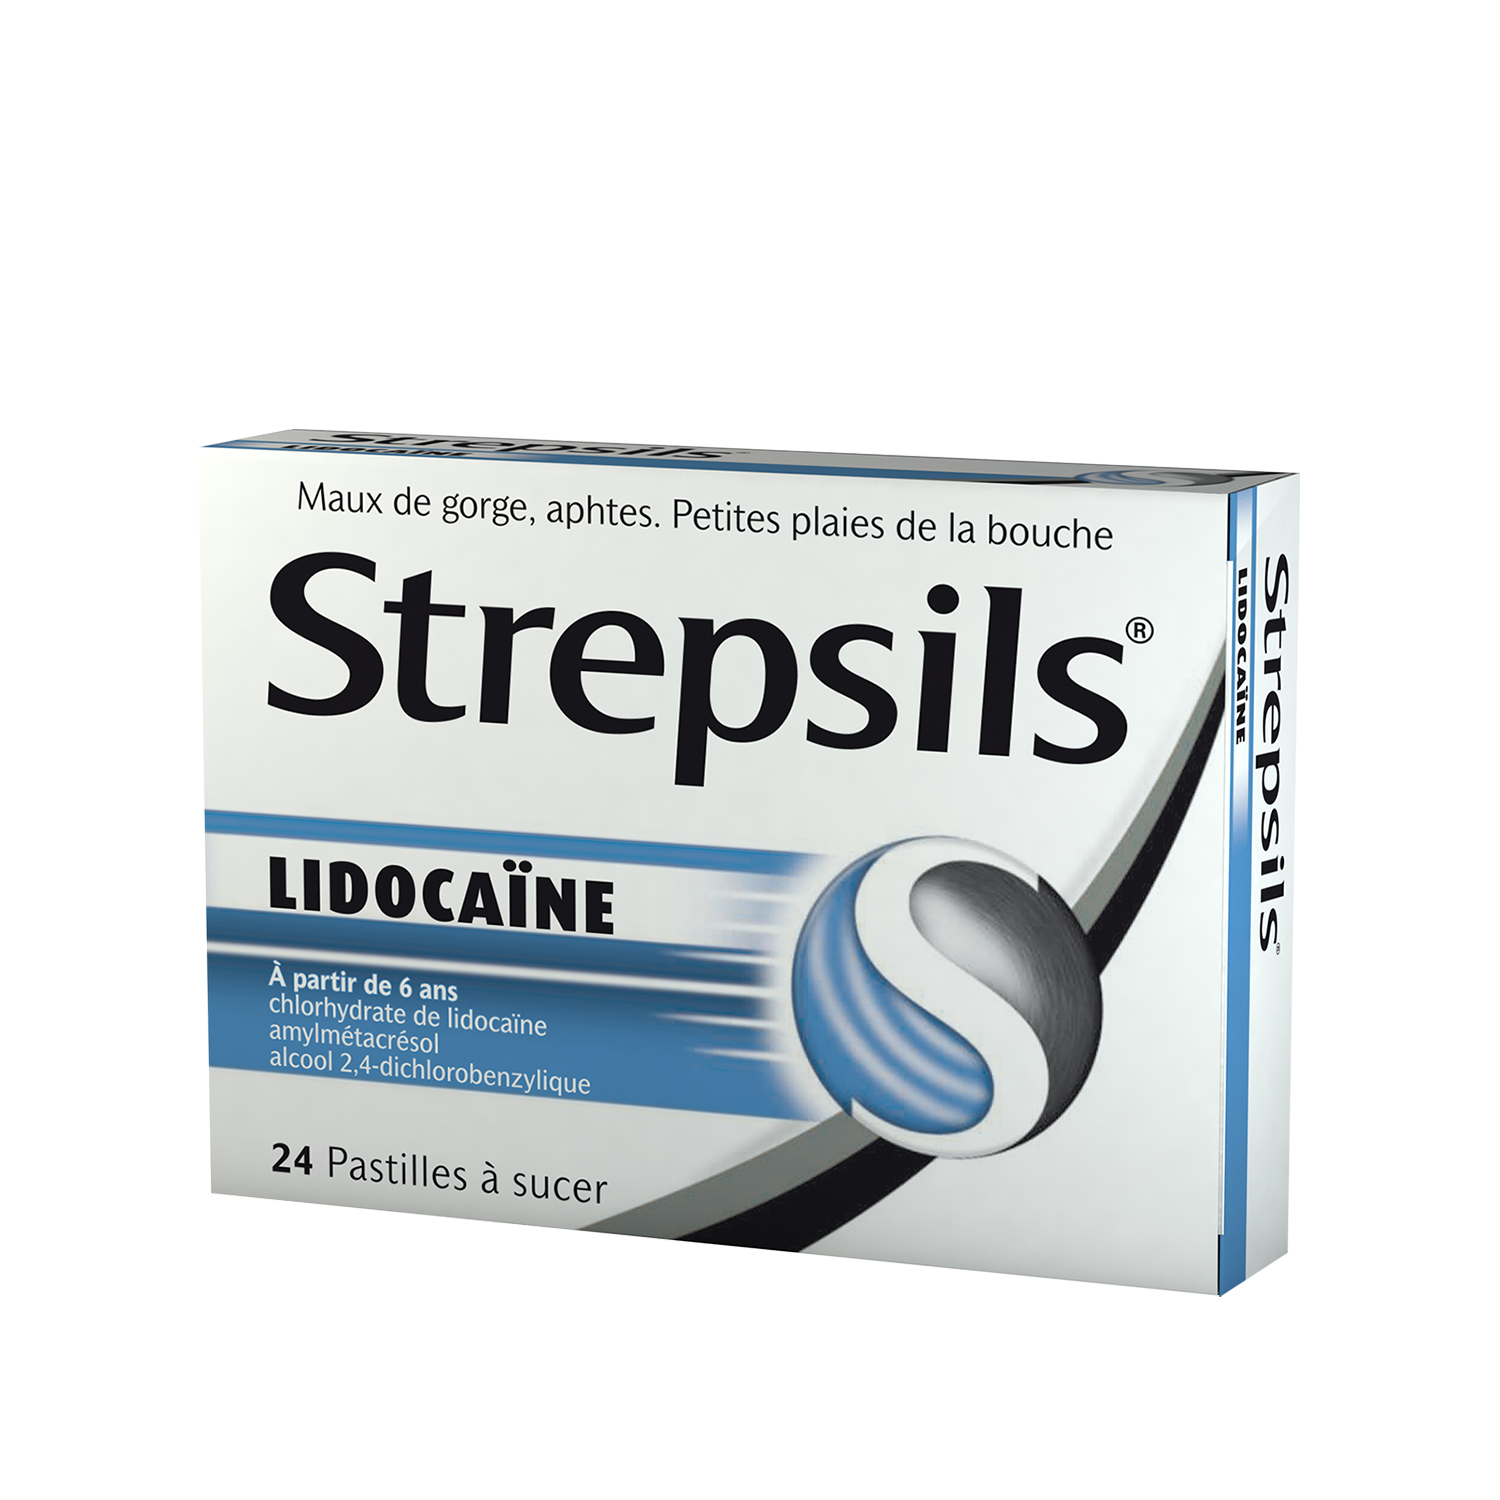 Strepsils Extra, soulagement efficace de la douleur cause par le